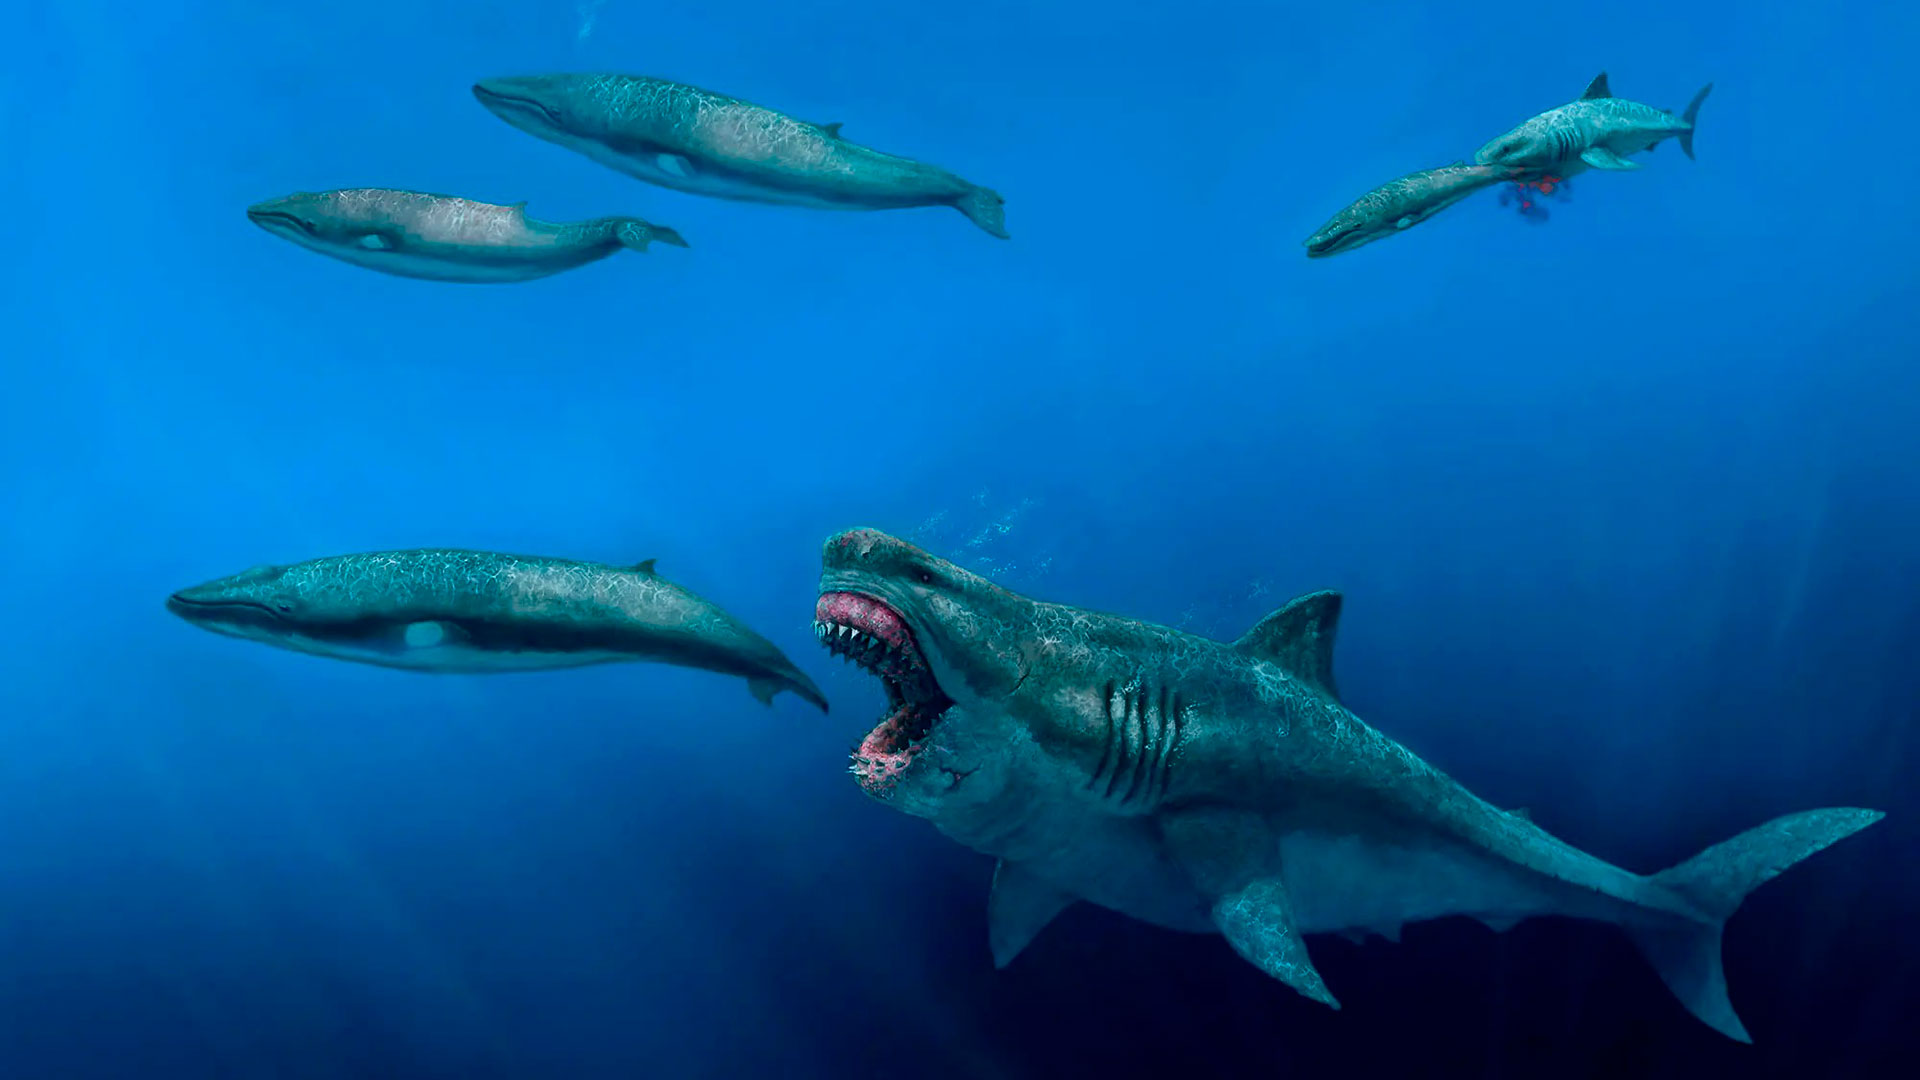 Imagen que representa a un megalodon alimentándose de ballenas.